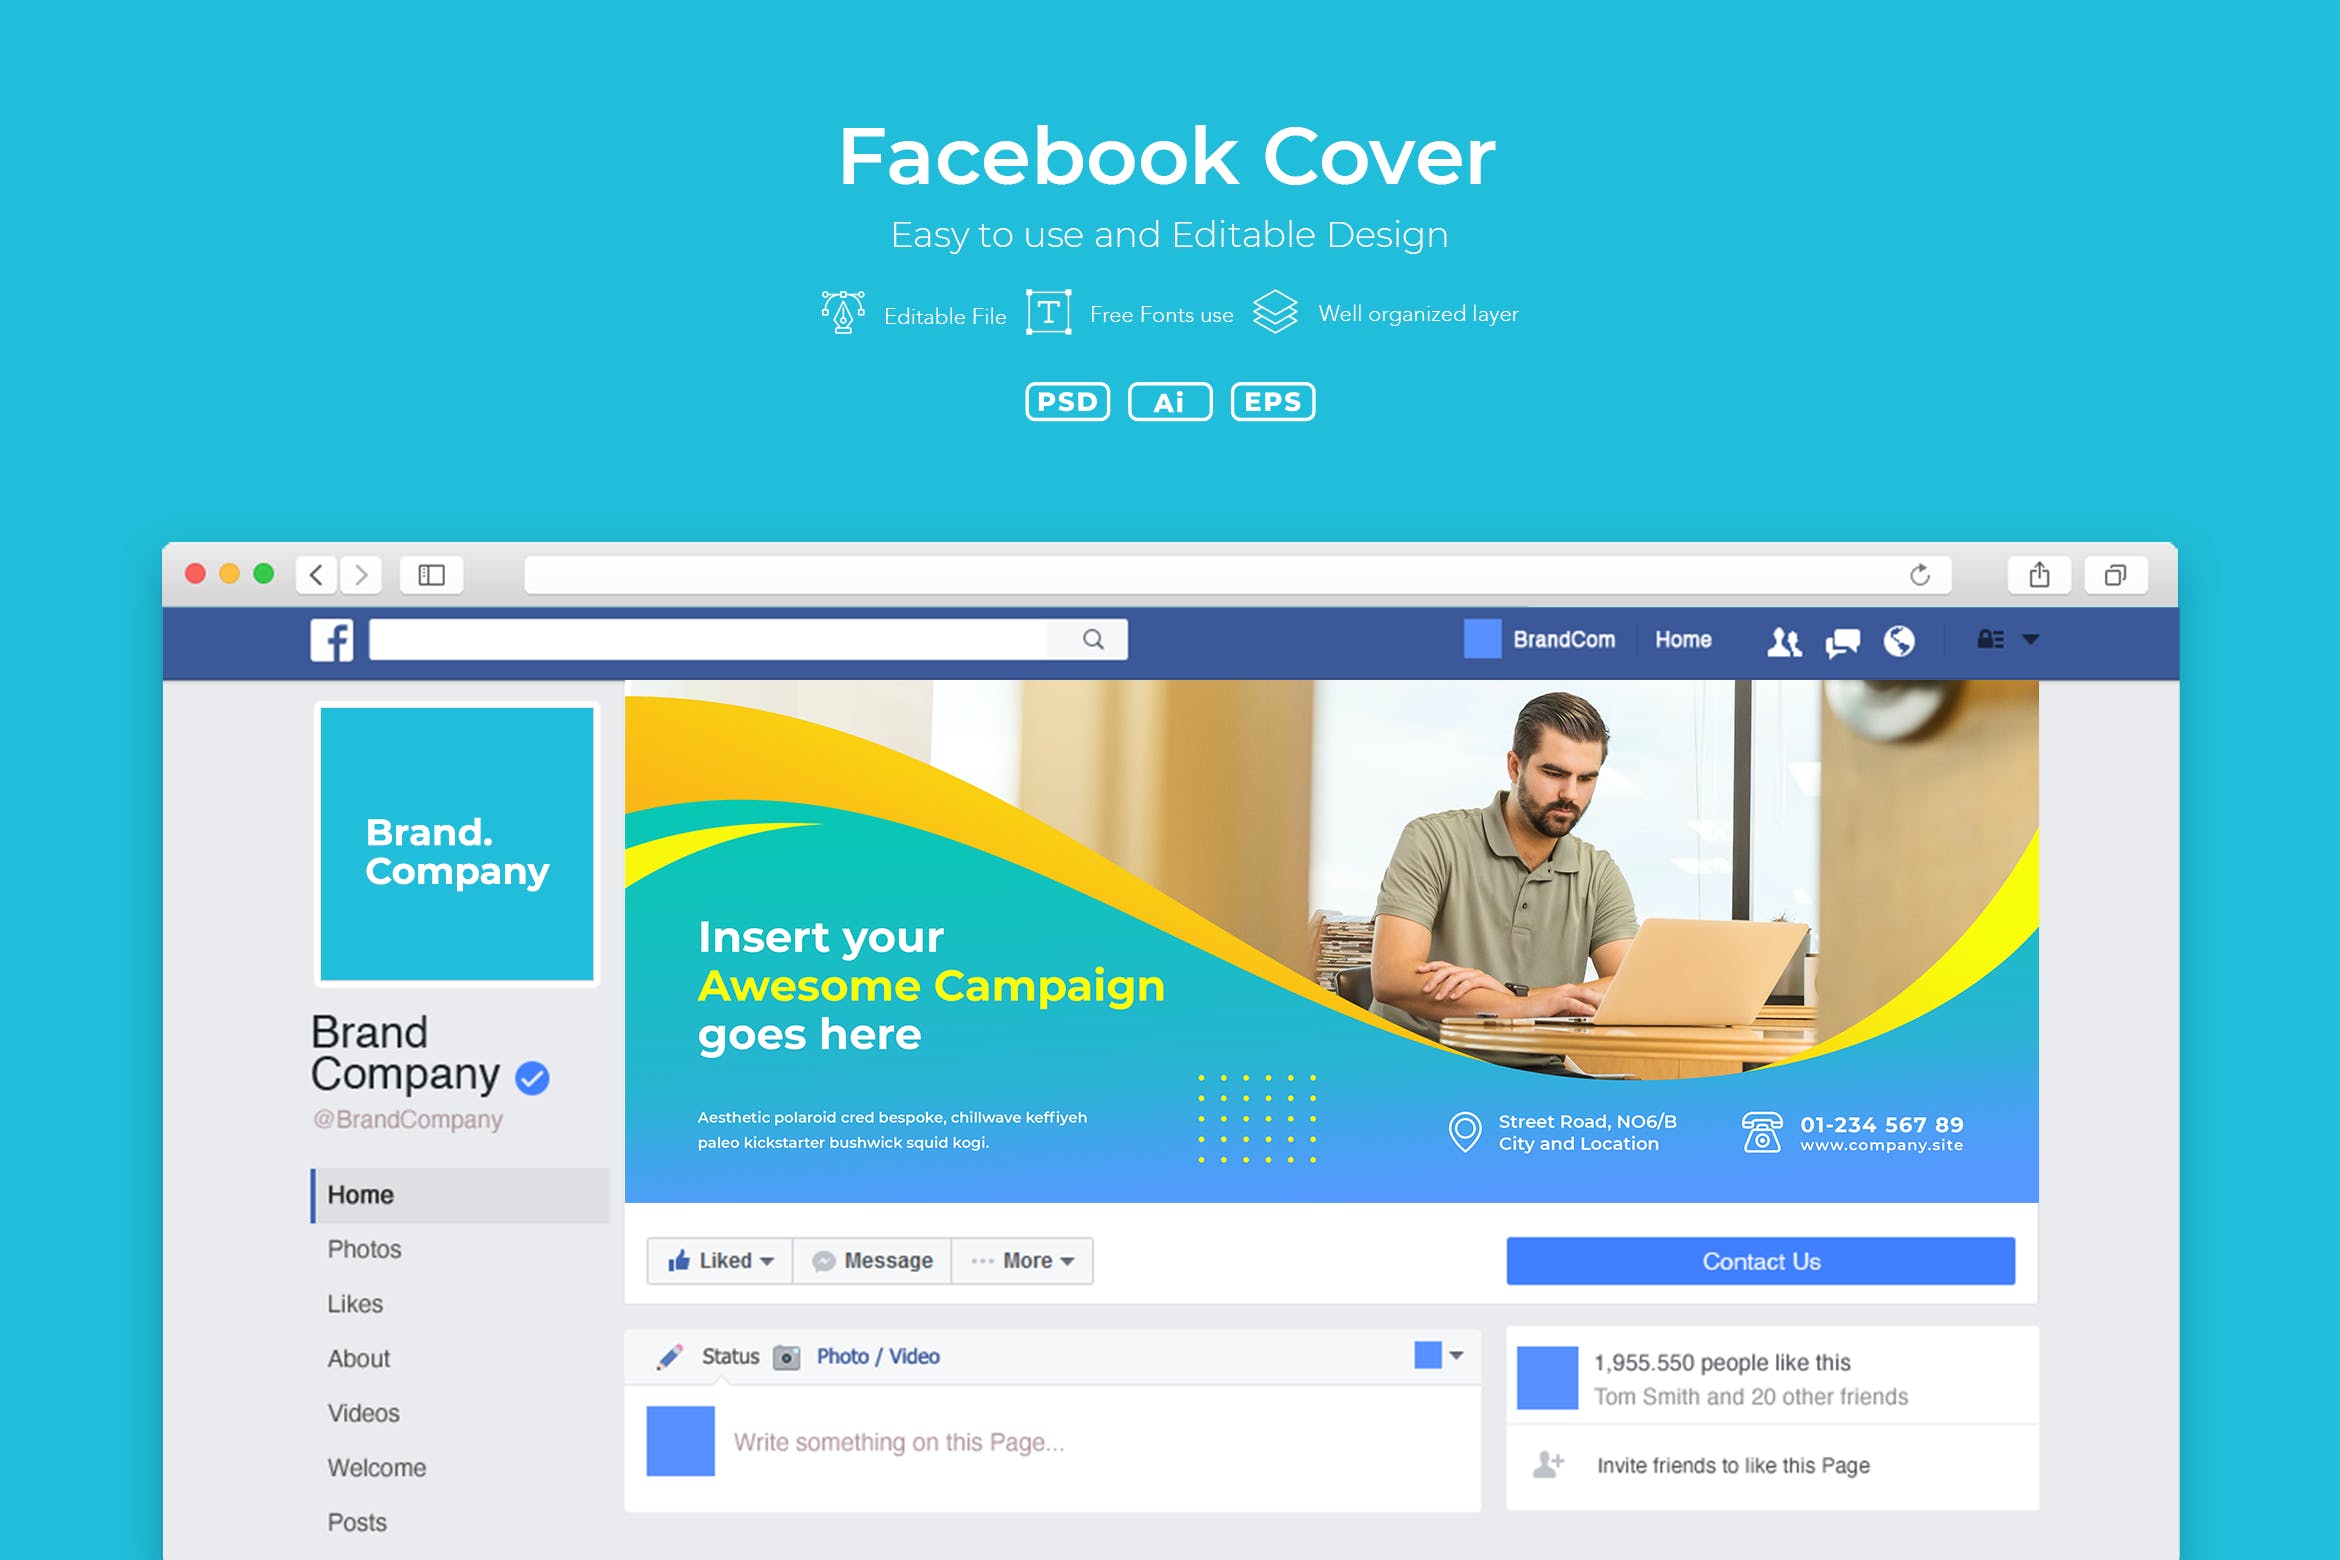 企业商务主题Facebook主页封面设计模板第一素材精选v2.5 ADL Facebook Cover.v2.5插图